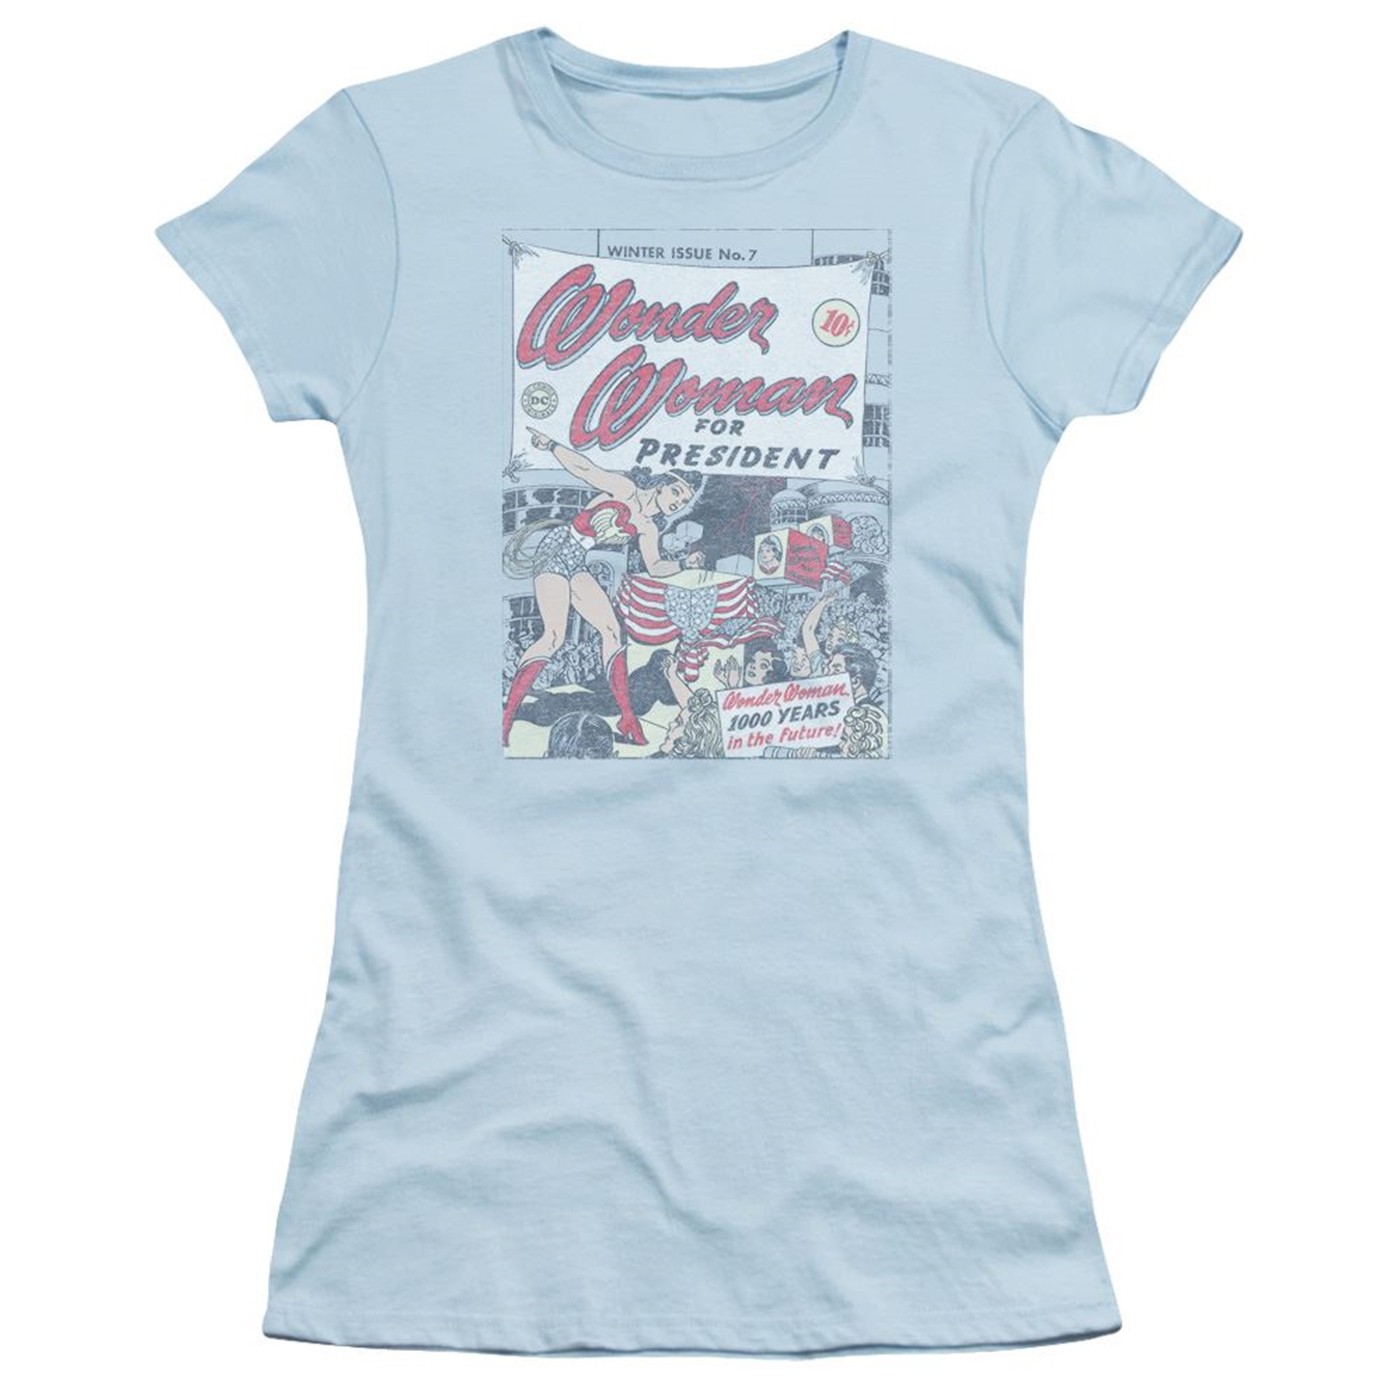 Wonder Woman for President Women's T-Shirt